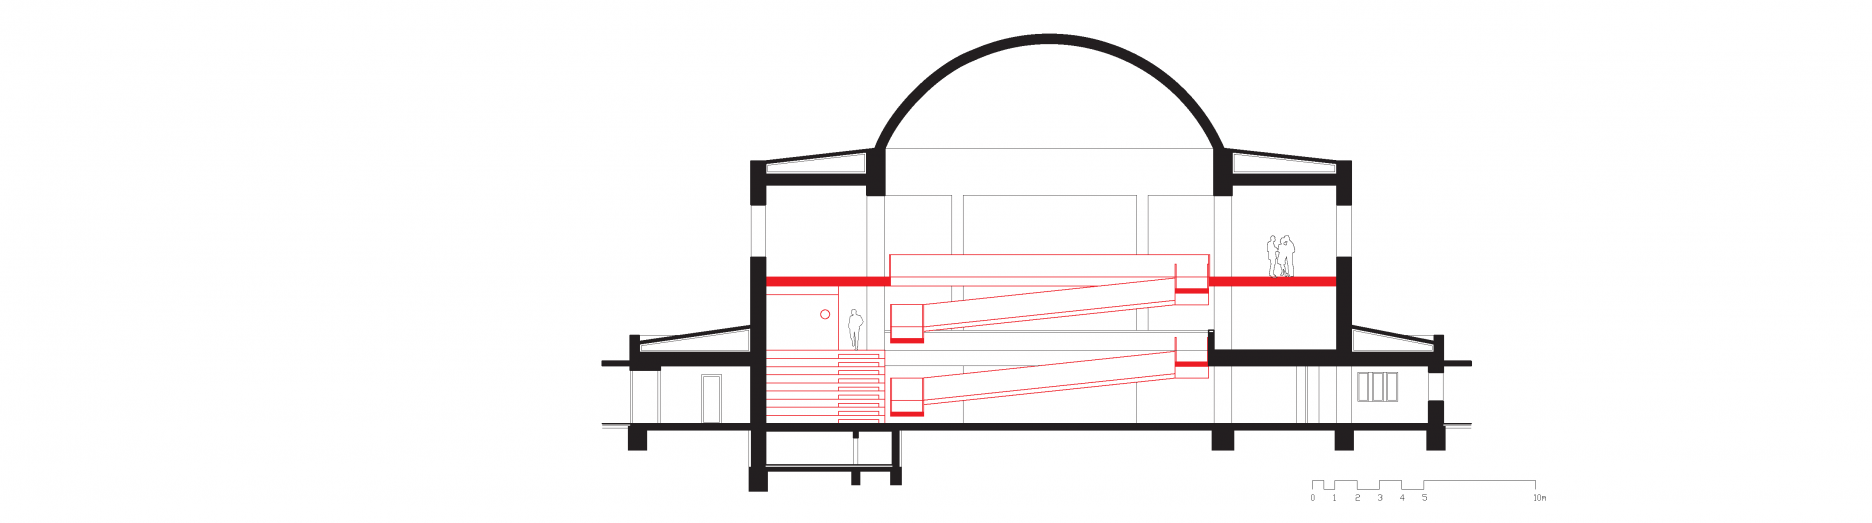 Nerealizovaný koncept  galérie sprístupnený rampami - arhitektonická štúdia z roku 2011